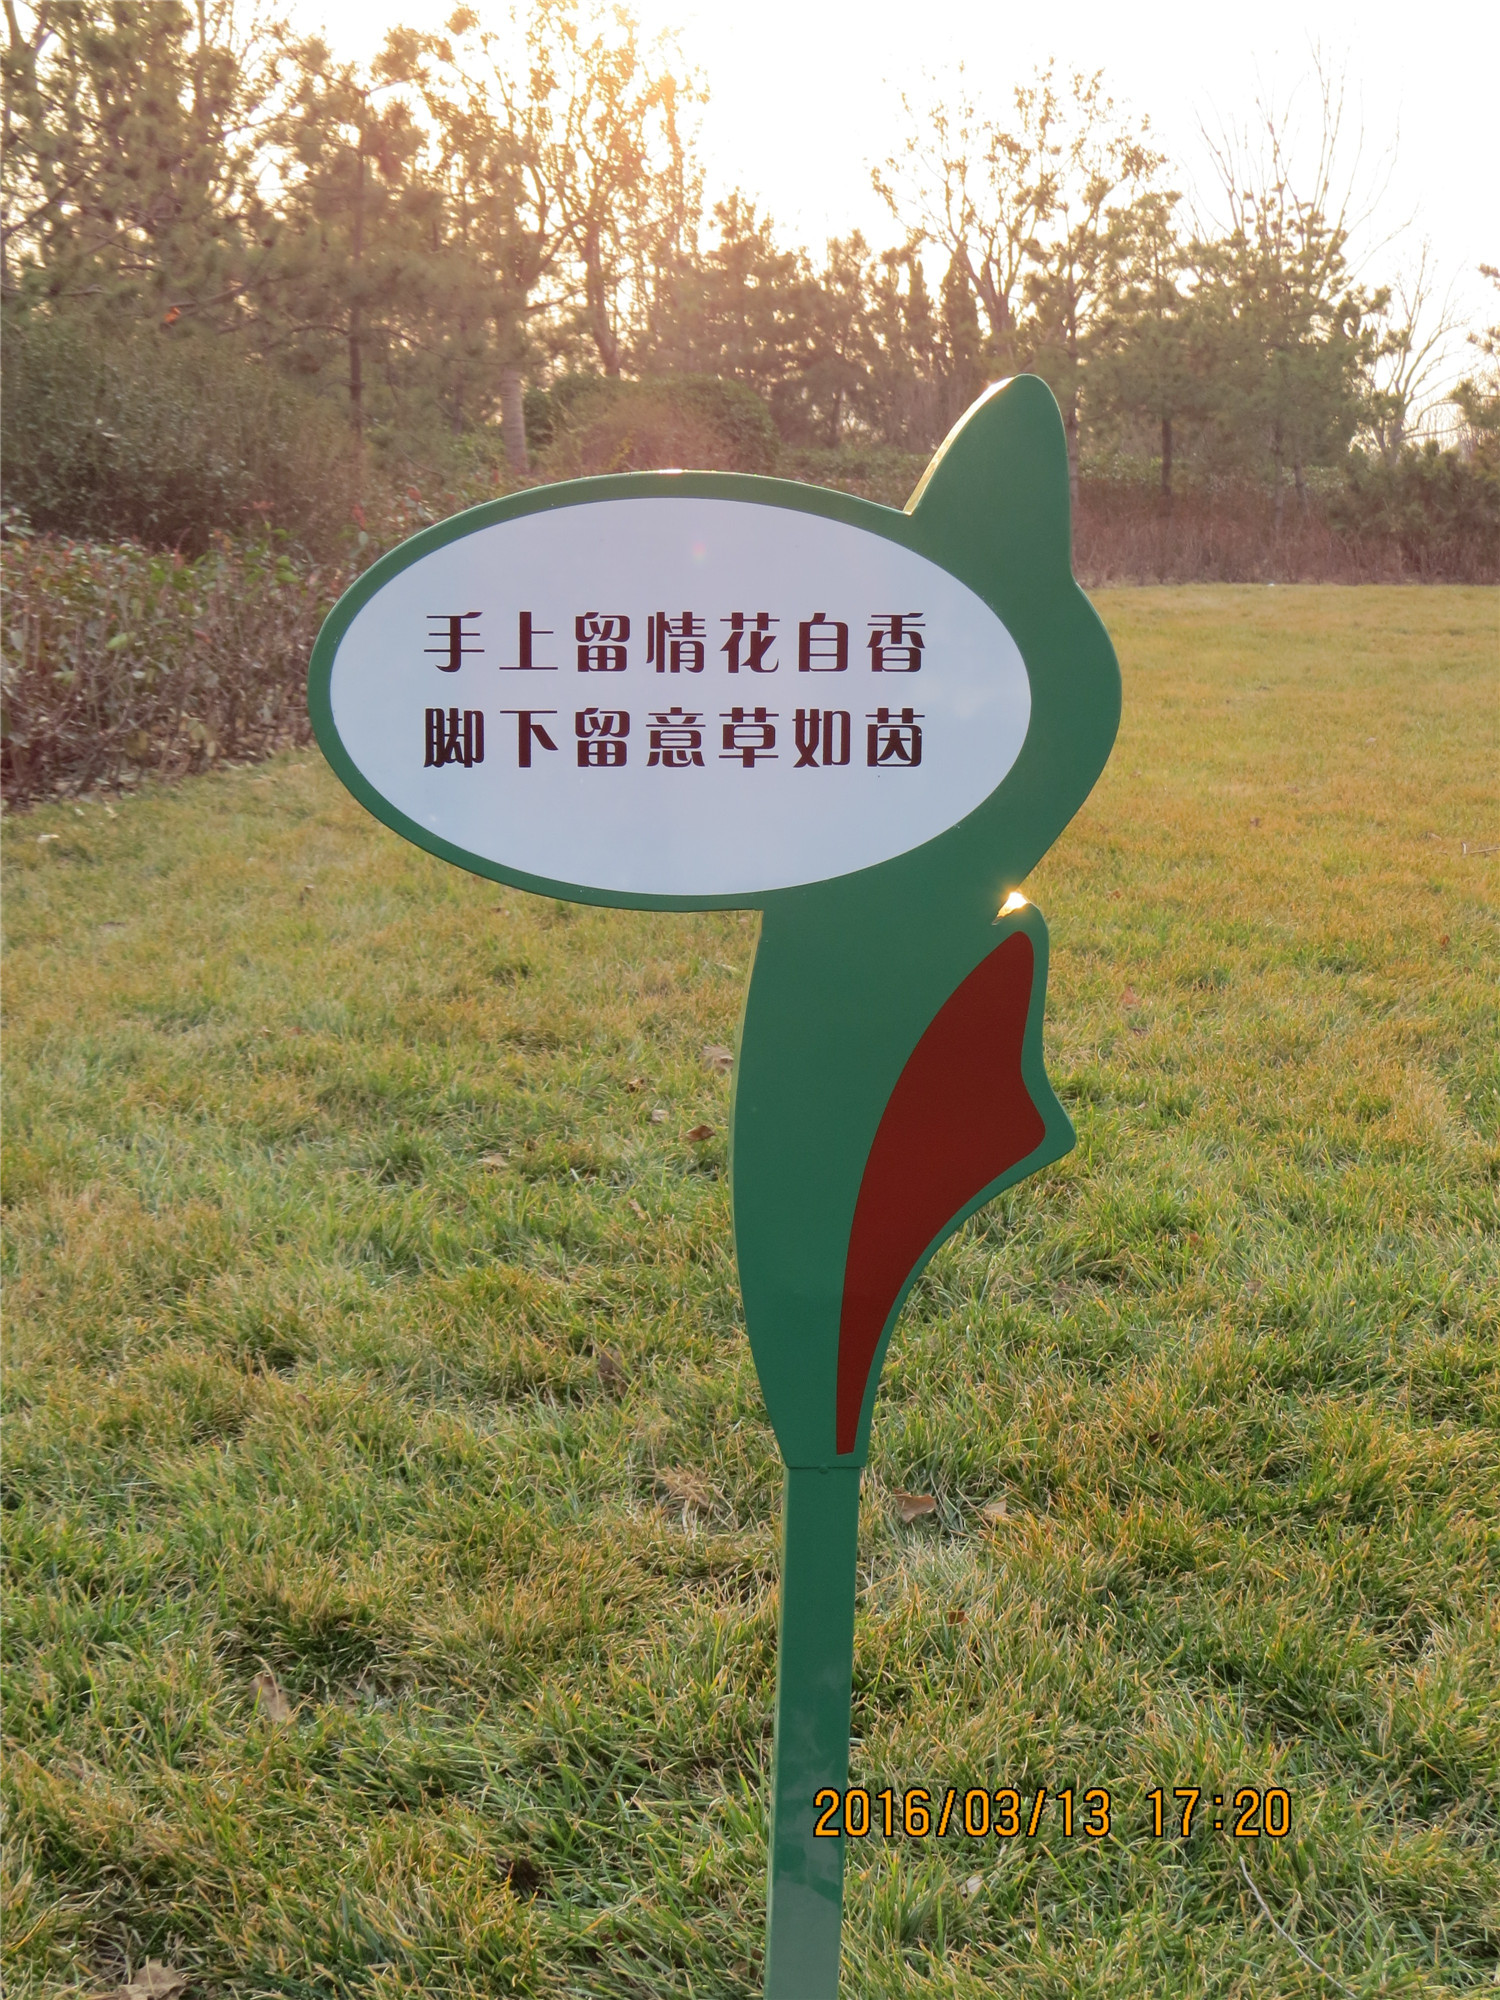 郑州市公园草坪牌/温馨提示牌制作厂家供应公园草坪牌/温馨提示牌制作